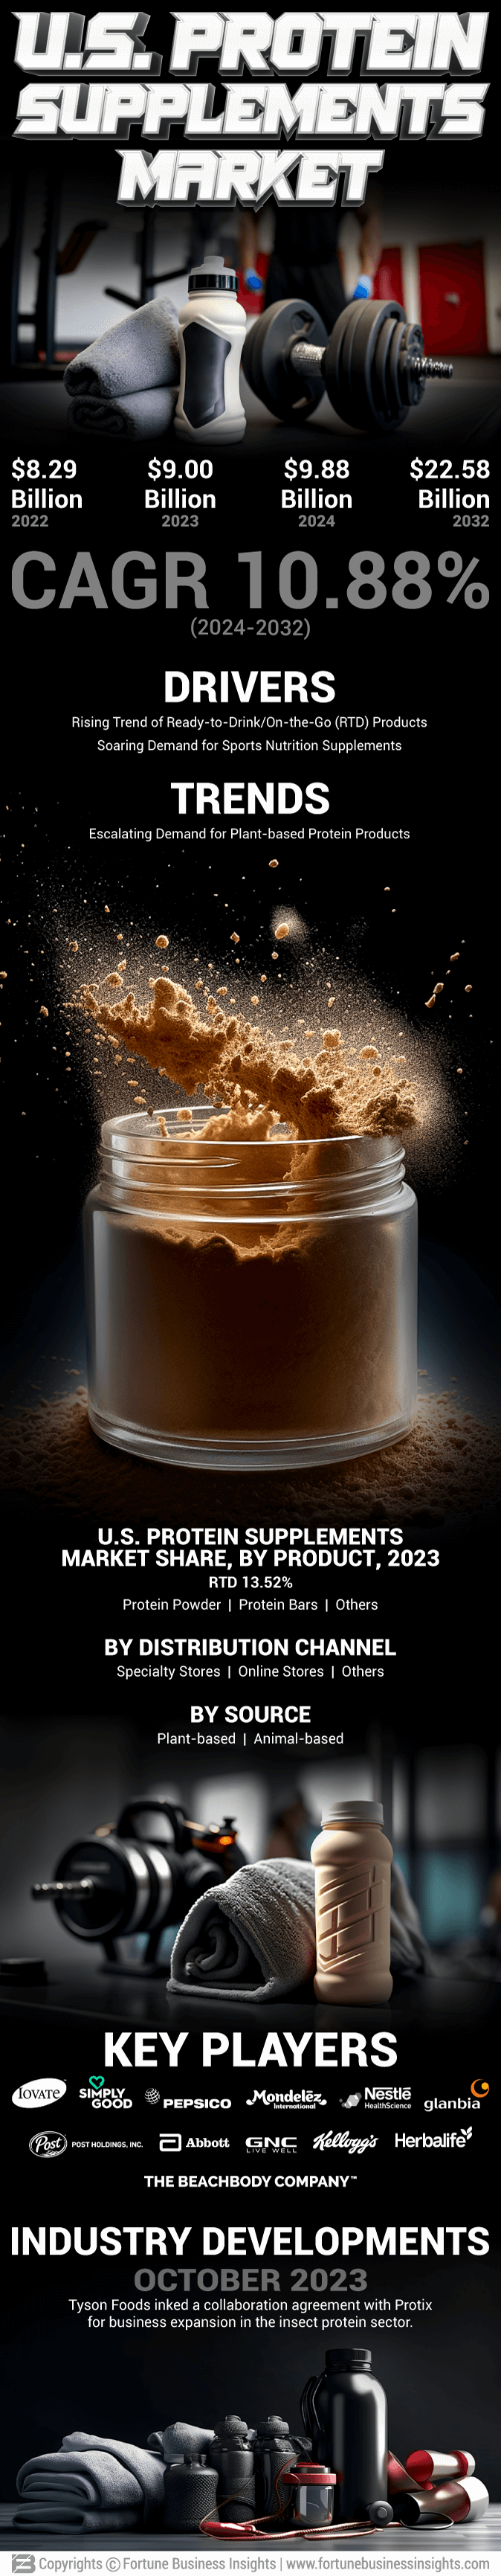 U.S. Protein Supplements Market